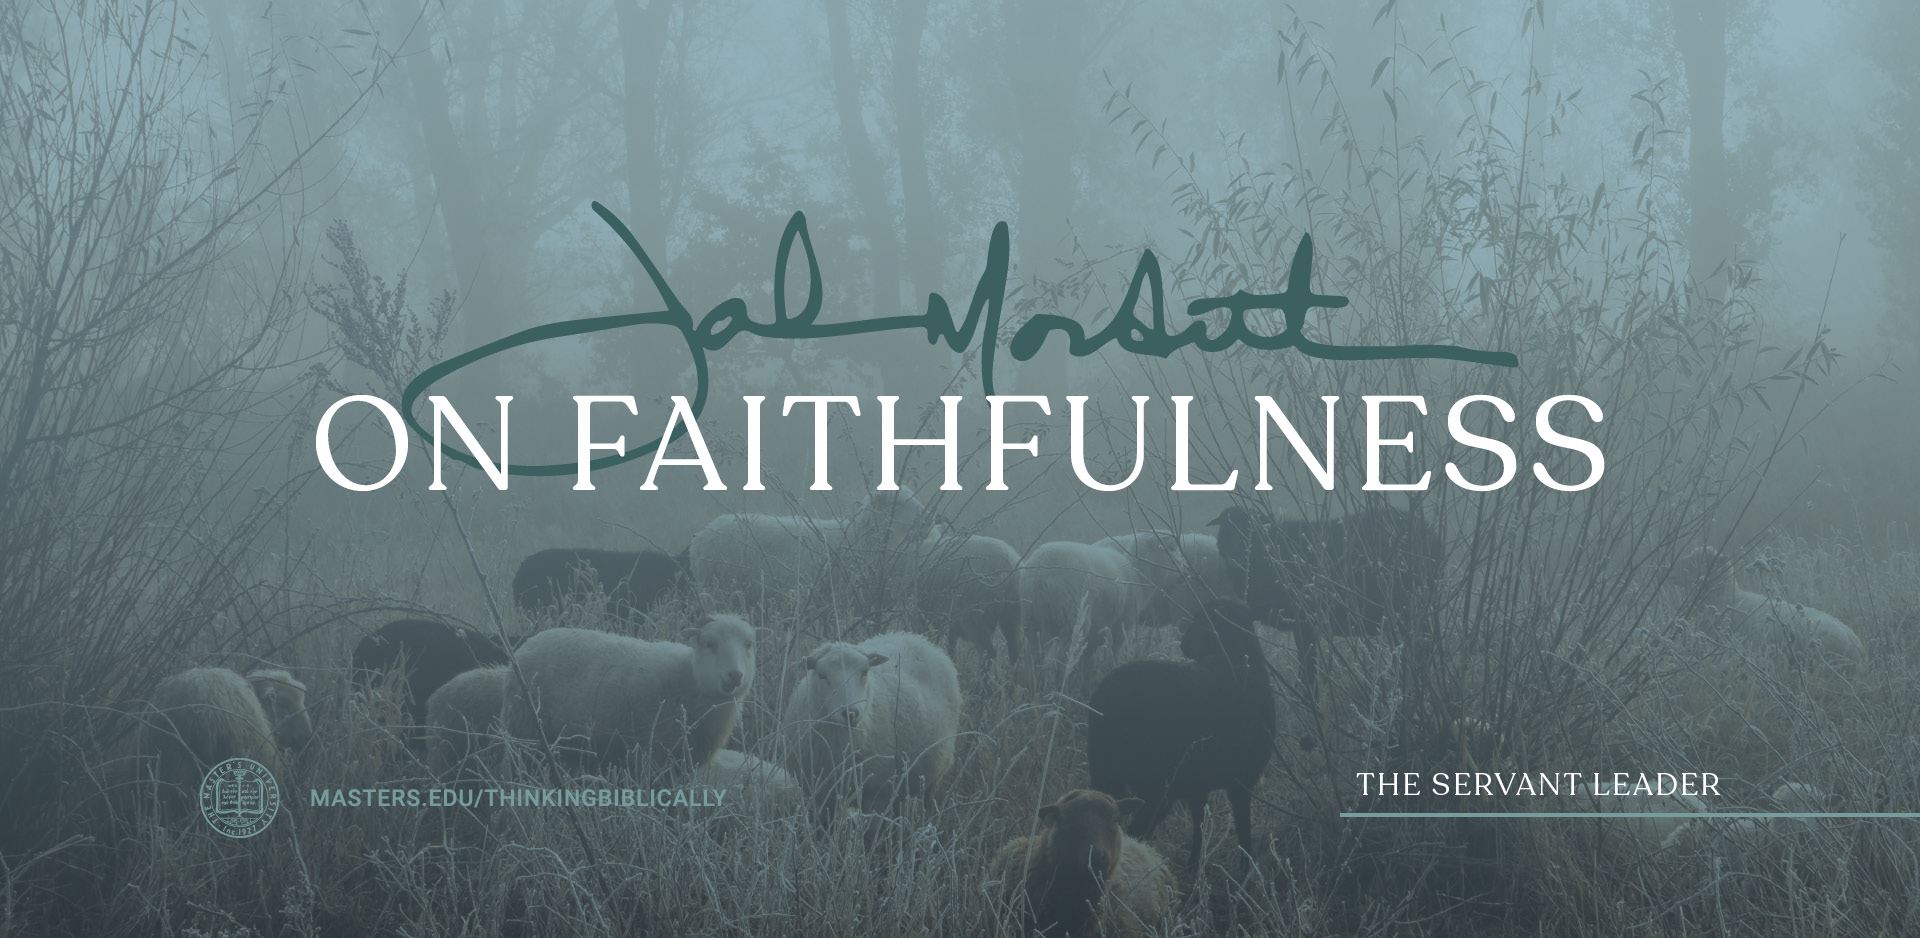 John MacArthur on Faithfulness Featured Image